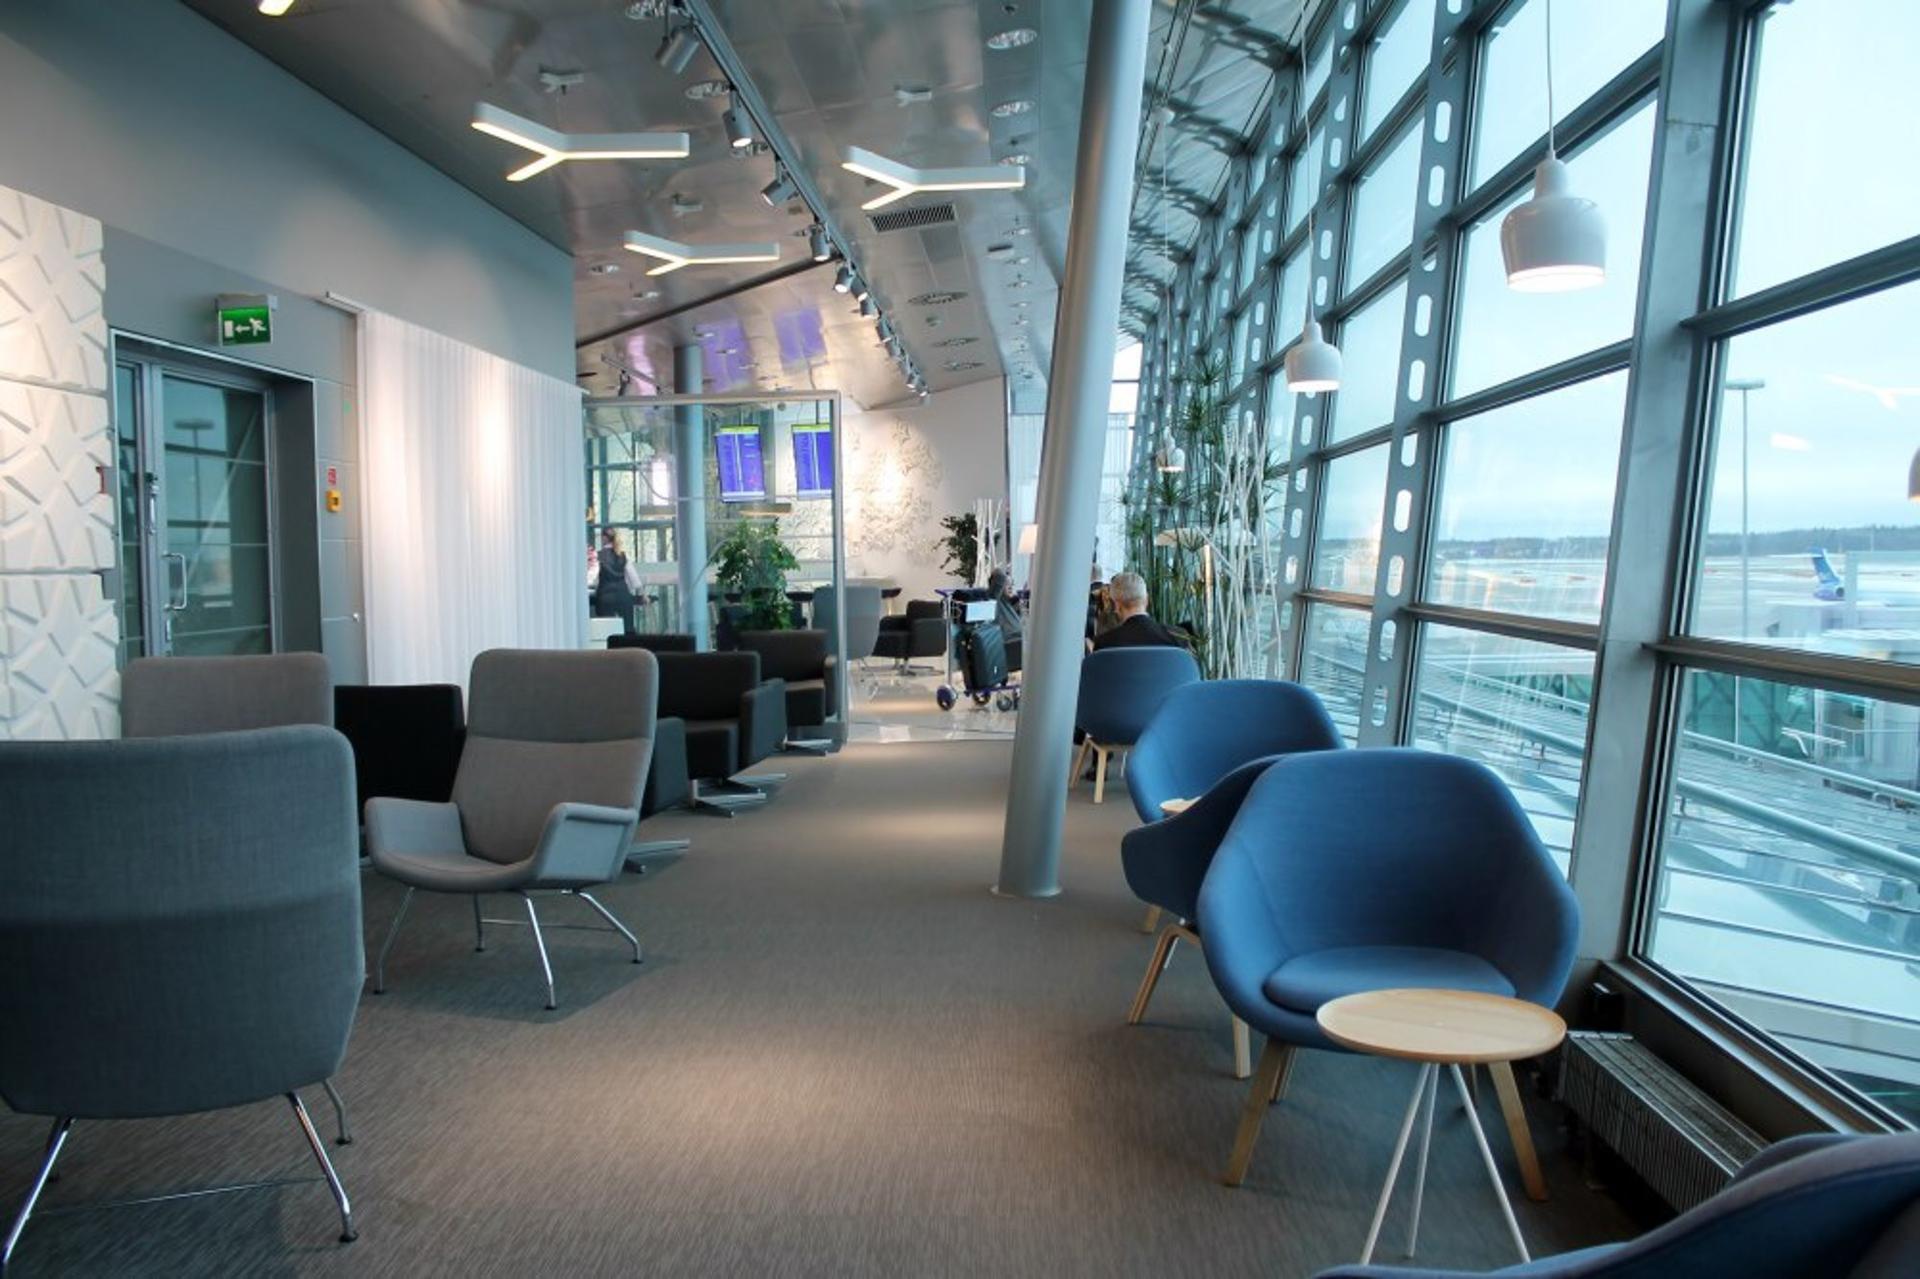 Finnair Lounge image 25 of 38